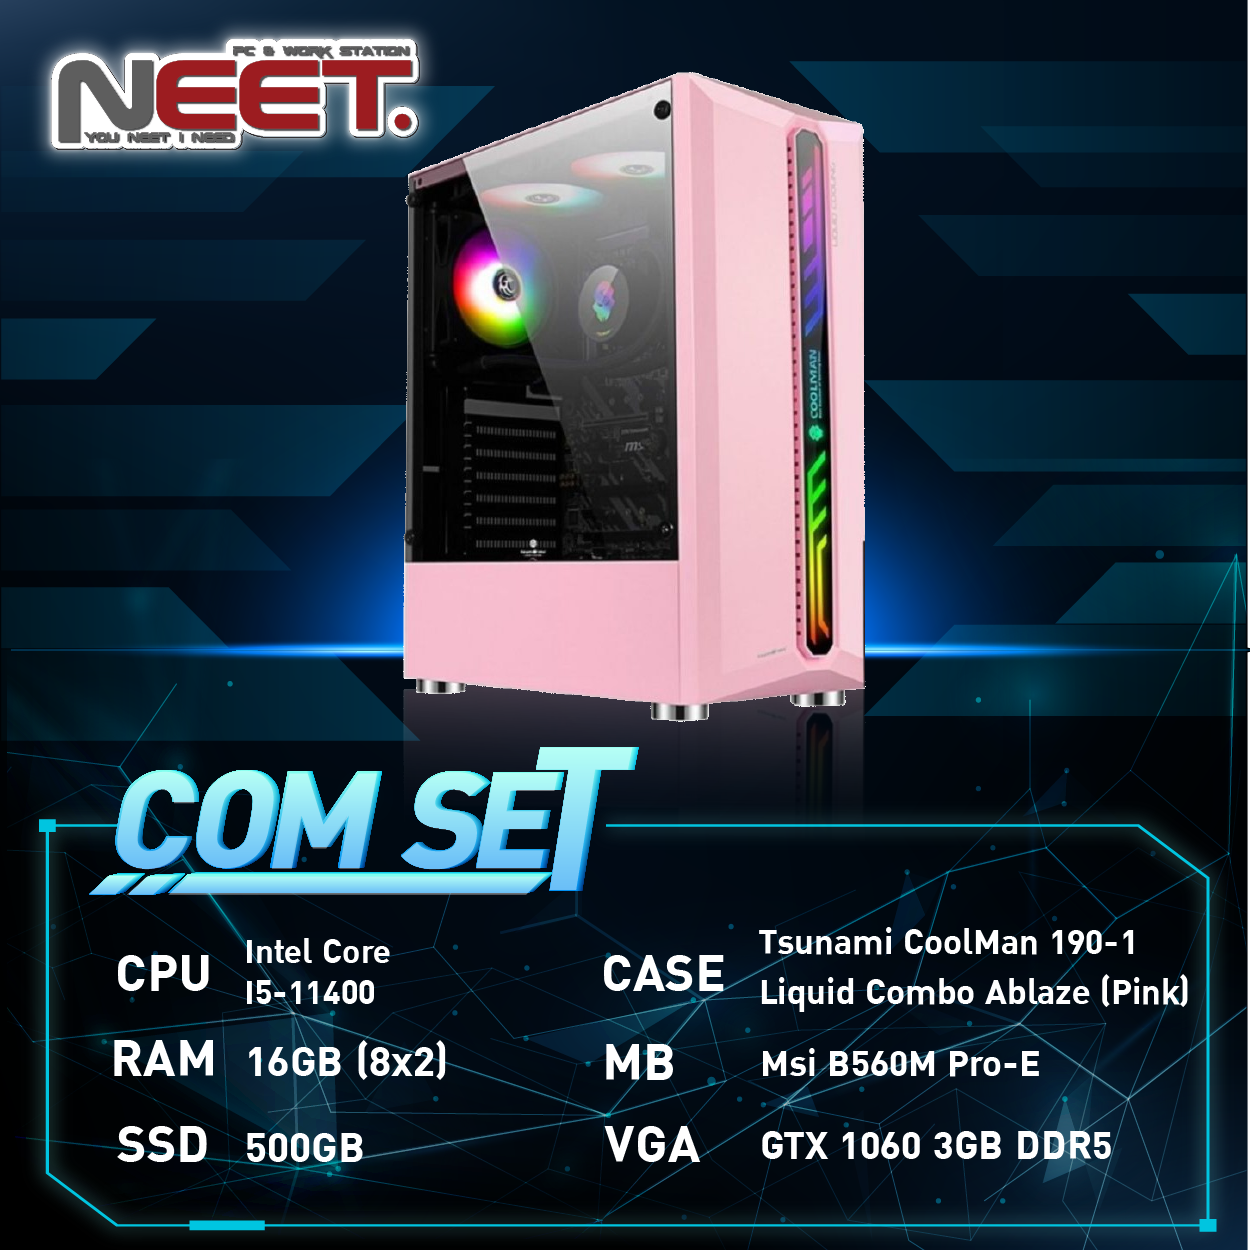 คอมประกอบ คอมพิวเตอร์ เล่นเกมส์ Tsunami CoolMan 190-1 (Pink)( Intel CoreI5-11400/16GB/ 500GB/GTX 1060 3GB DDR5)